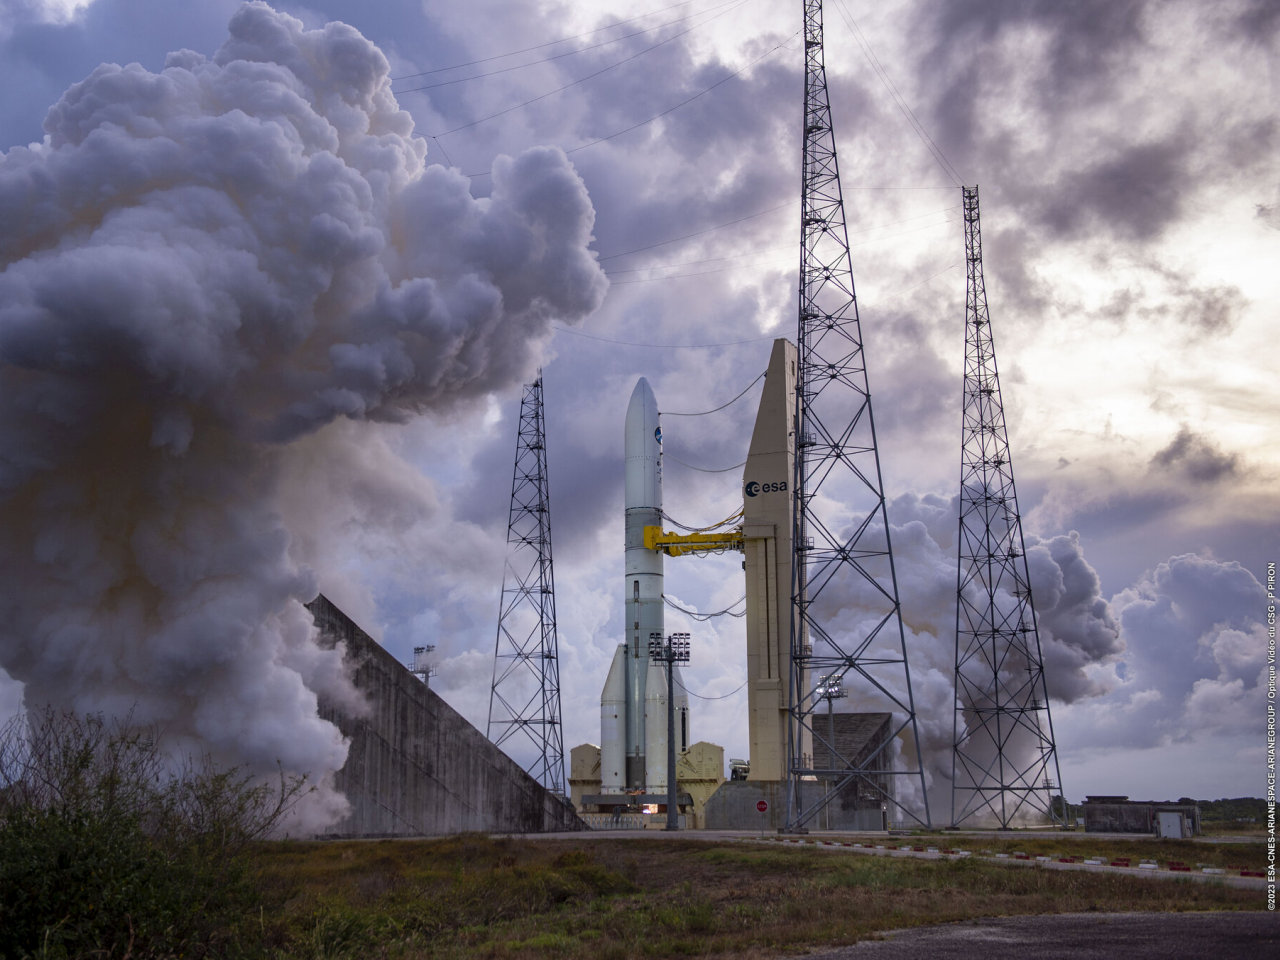 欧州次期大型ロケット「Ariane 6」、470秒の射点燃焼試験が成功--12月に上段の最終燃焼試験